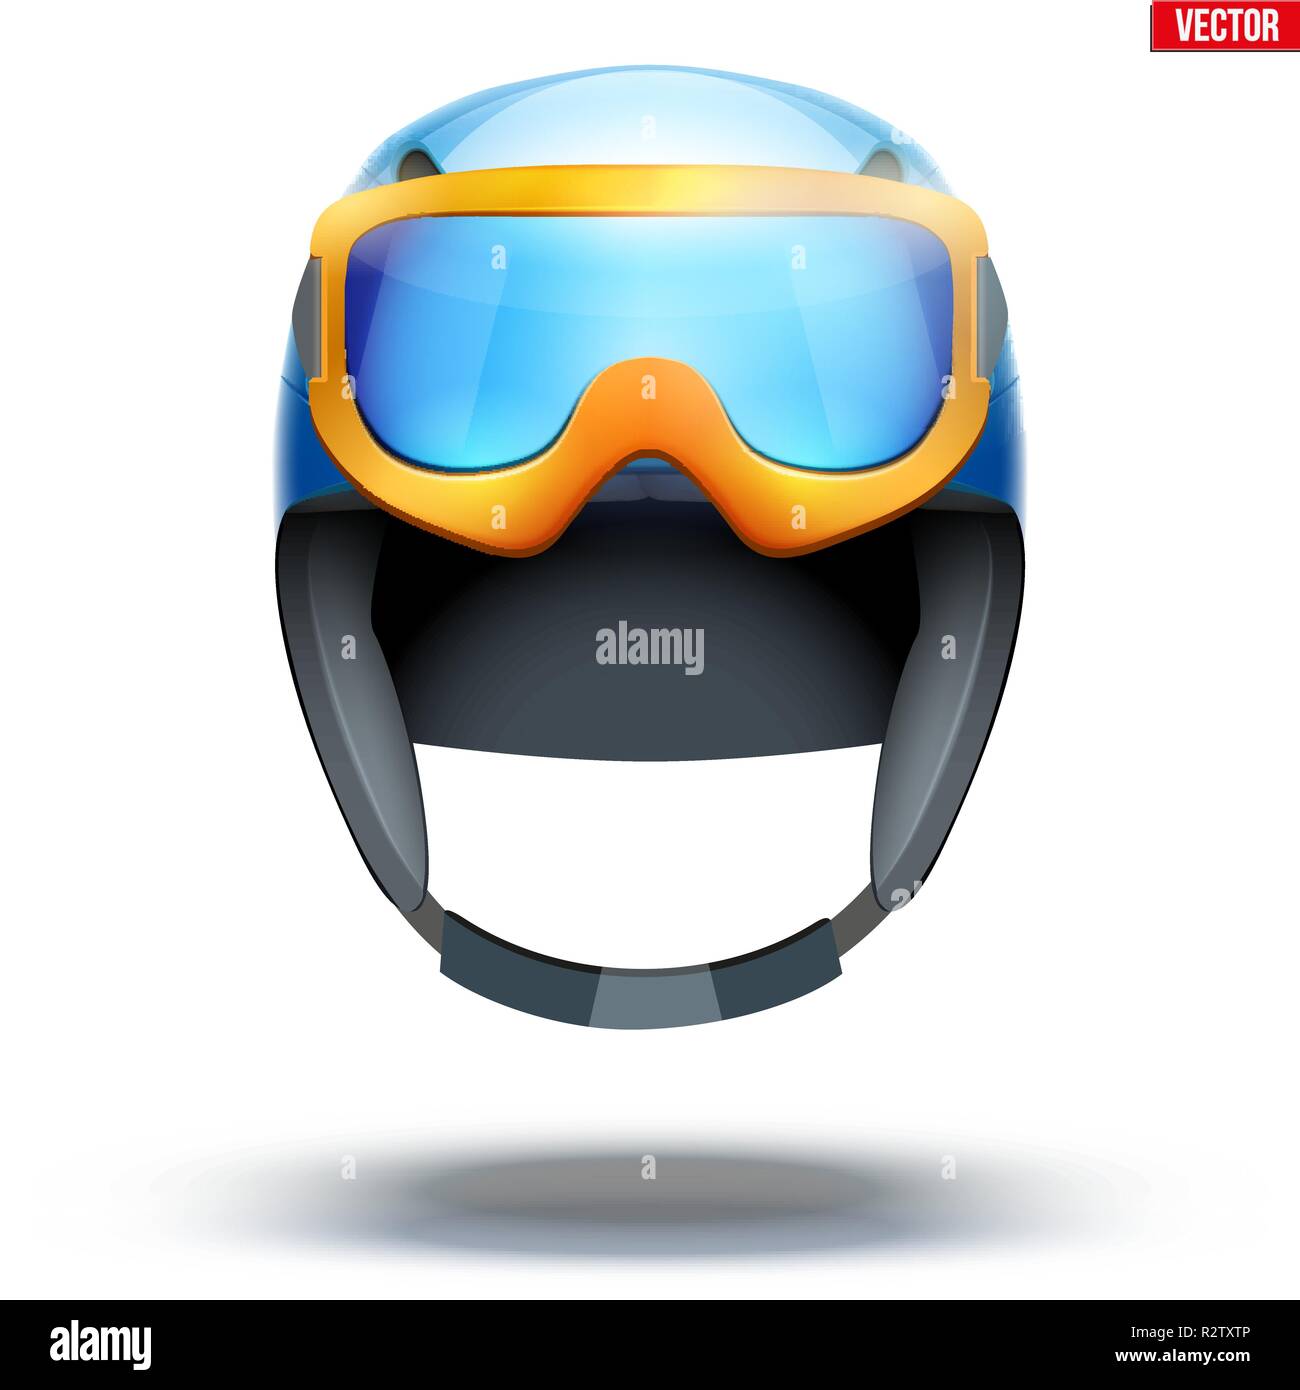 Klassische Ski Snowboard Helm mit Brille. Stock Vektor